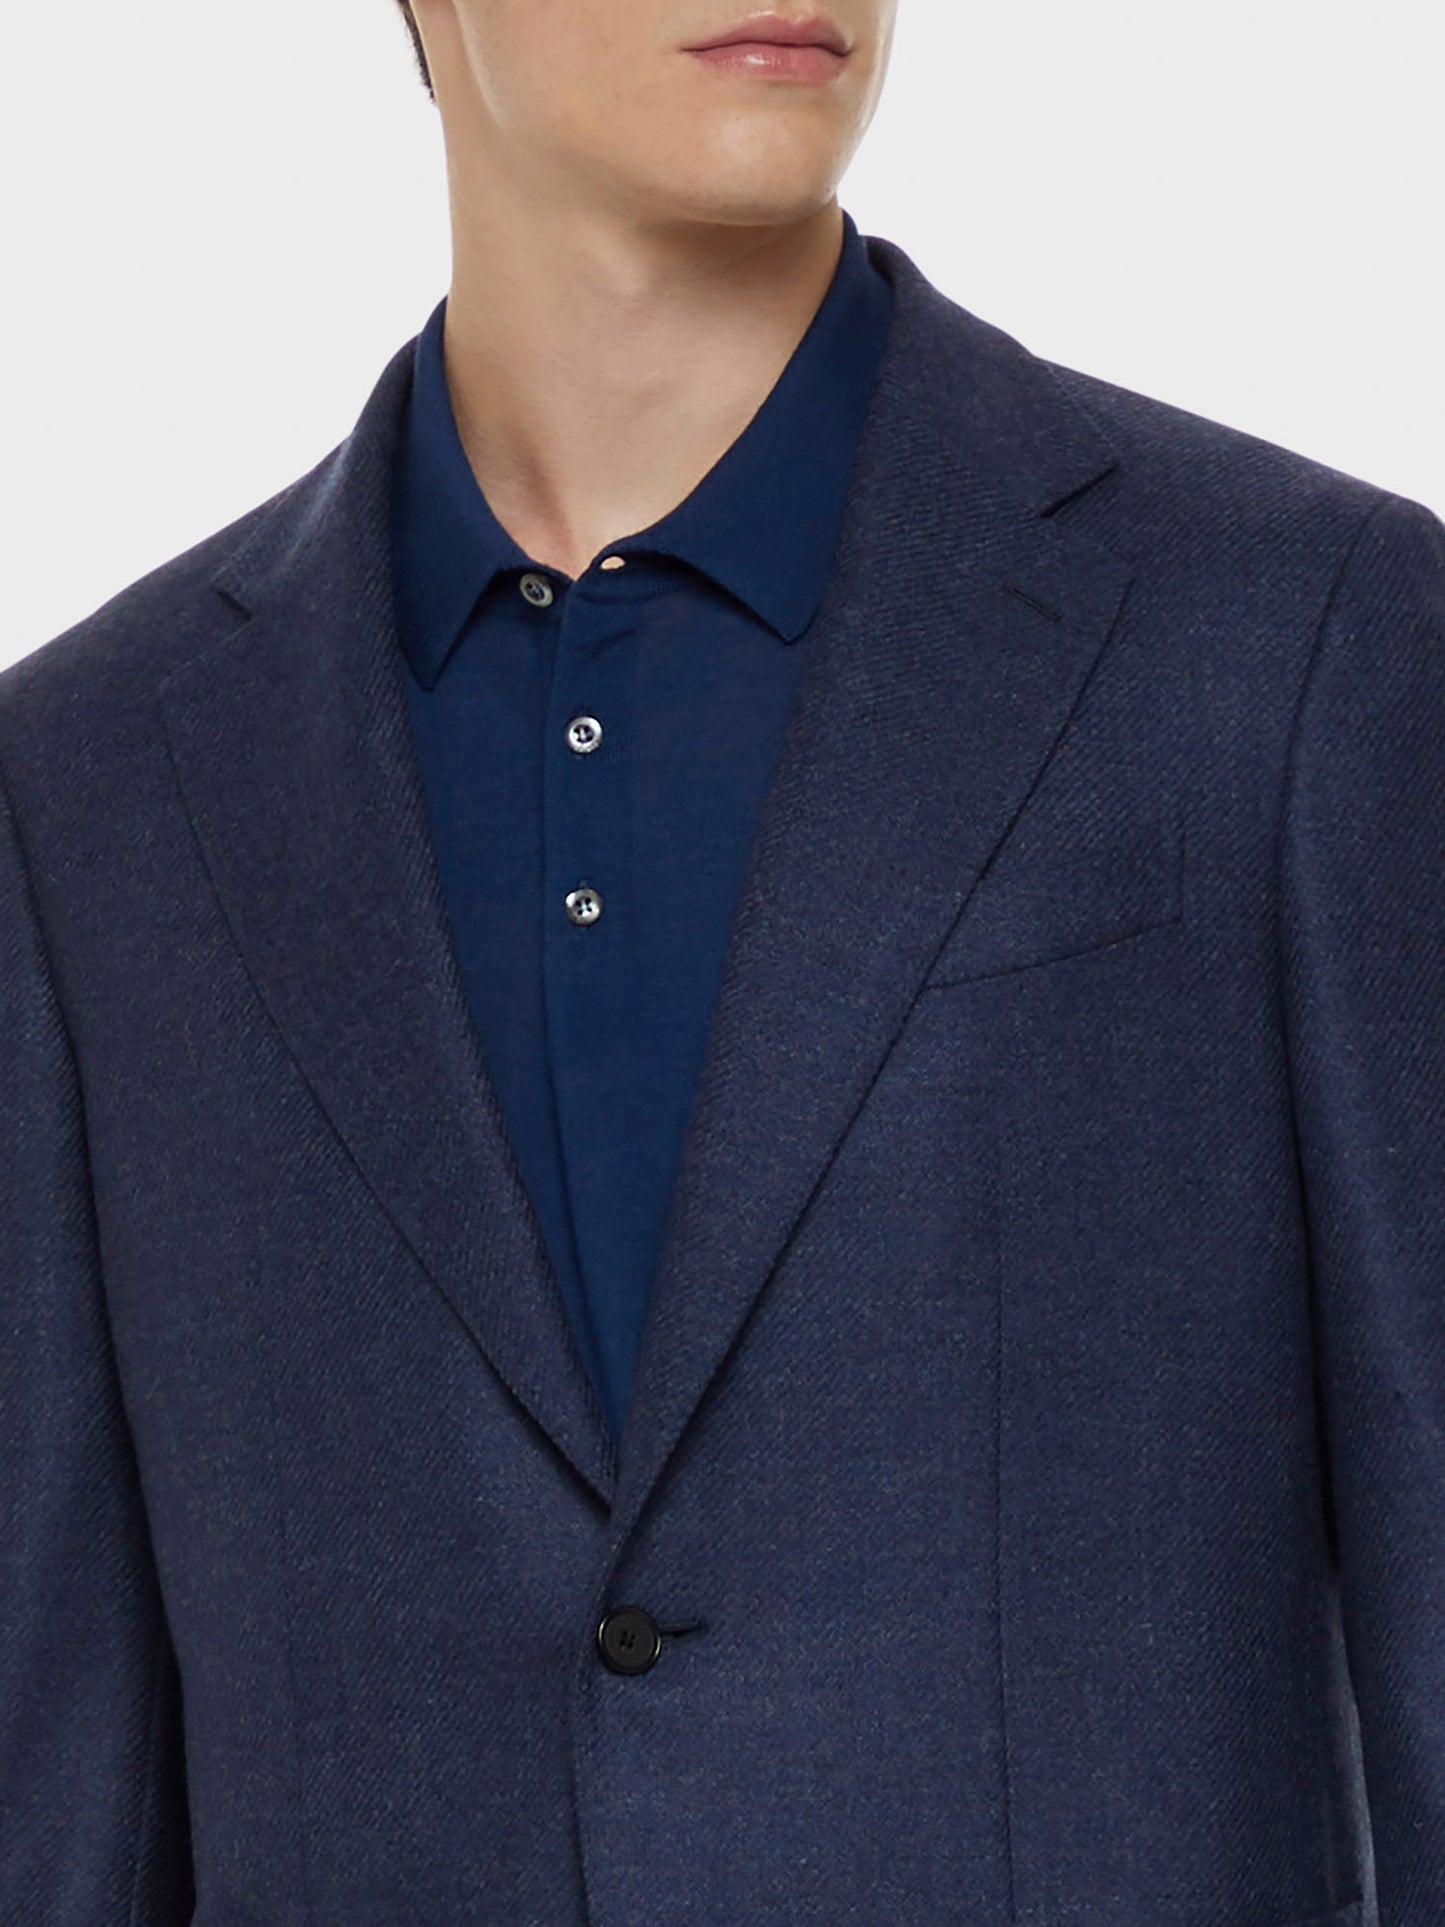 Caruso Menswear Abbigliamento Uomo Giacca butterfly in lana cashmere blu dettaglio